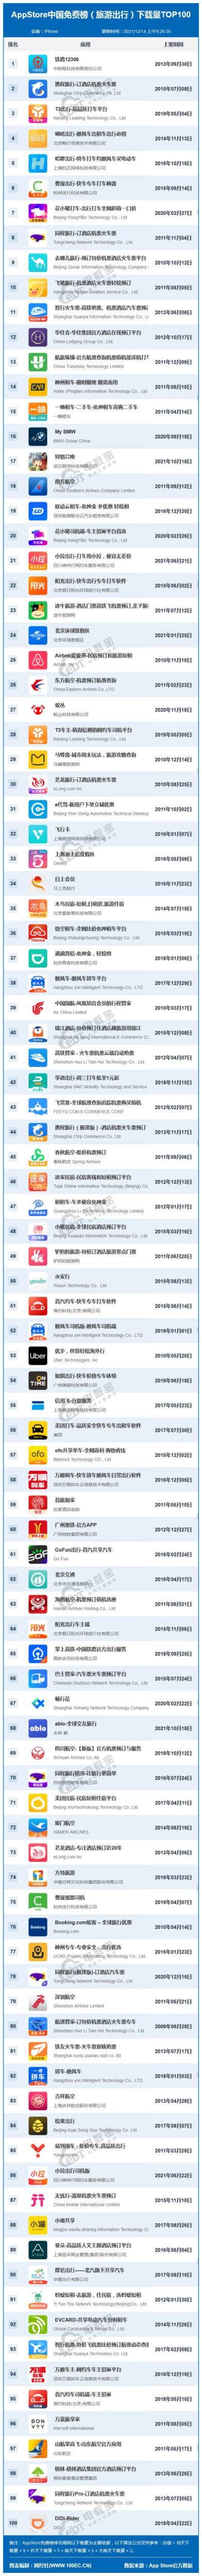 12月AppStore中国免费榜(旅游出行)TOP100：携程旅行等居前十